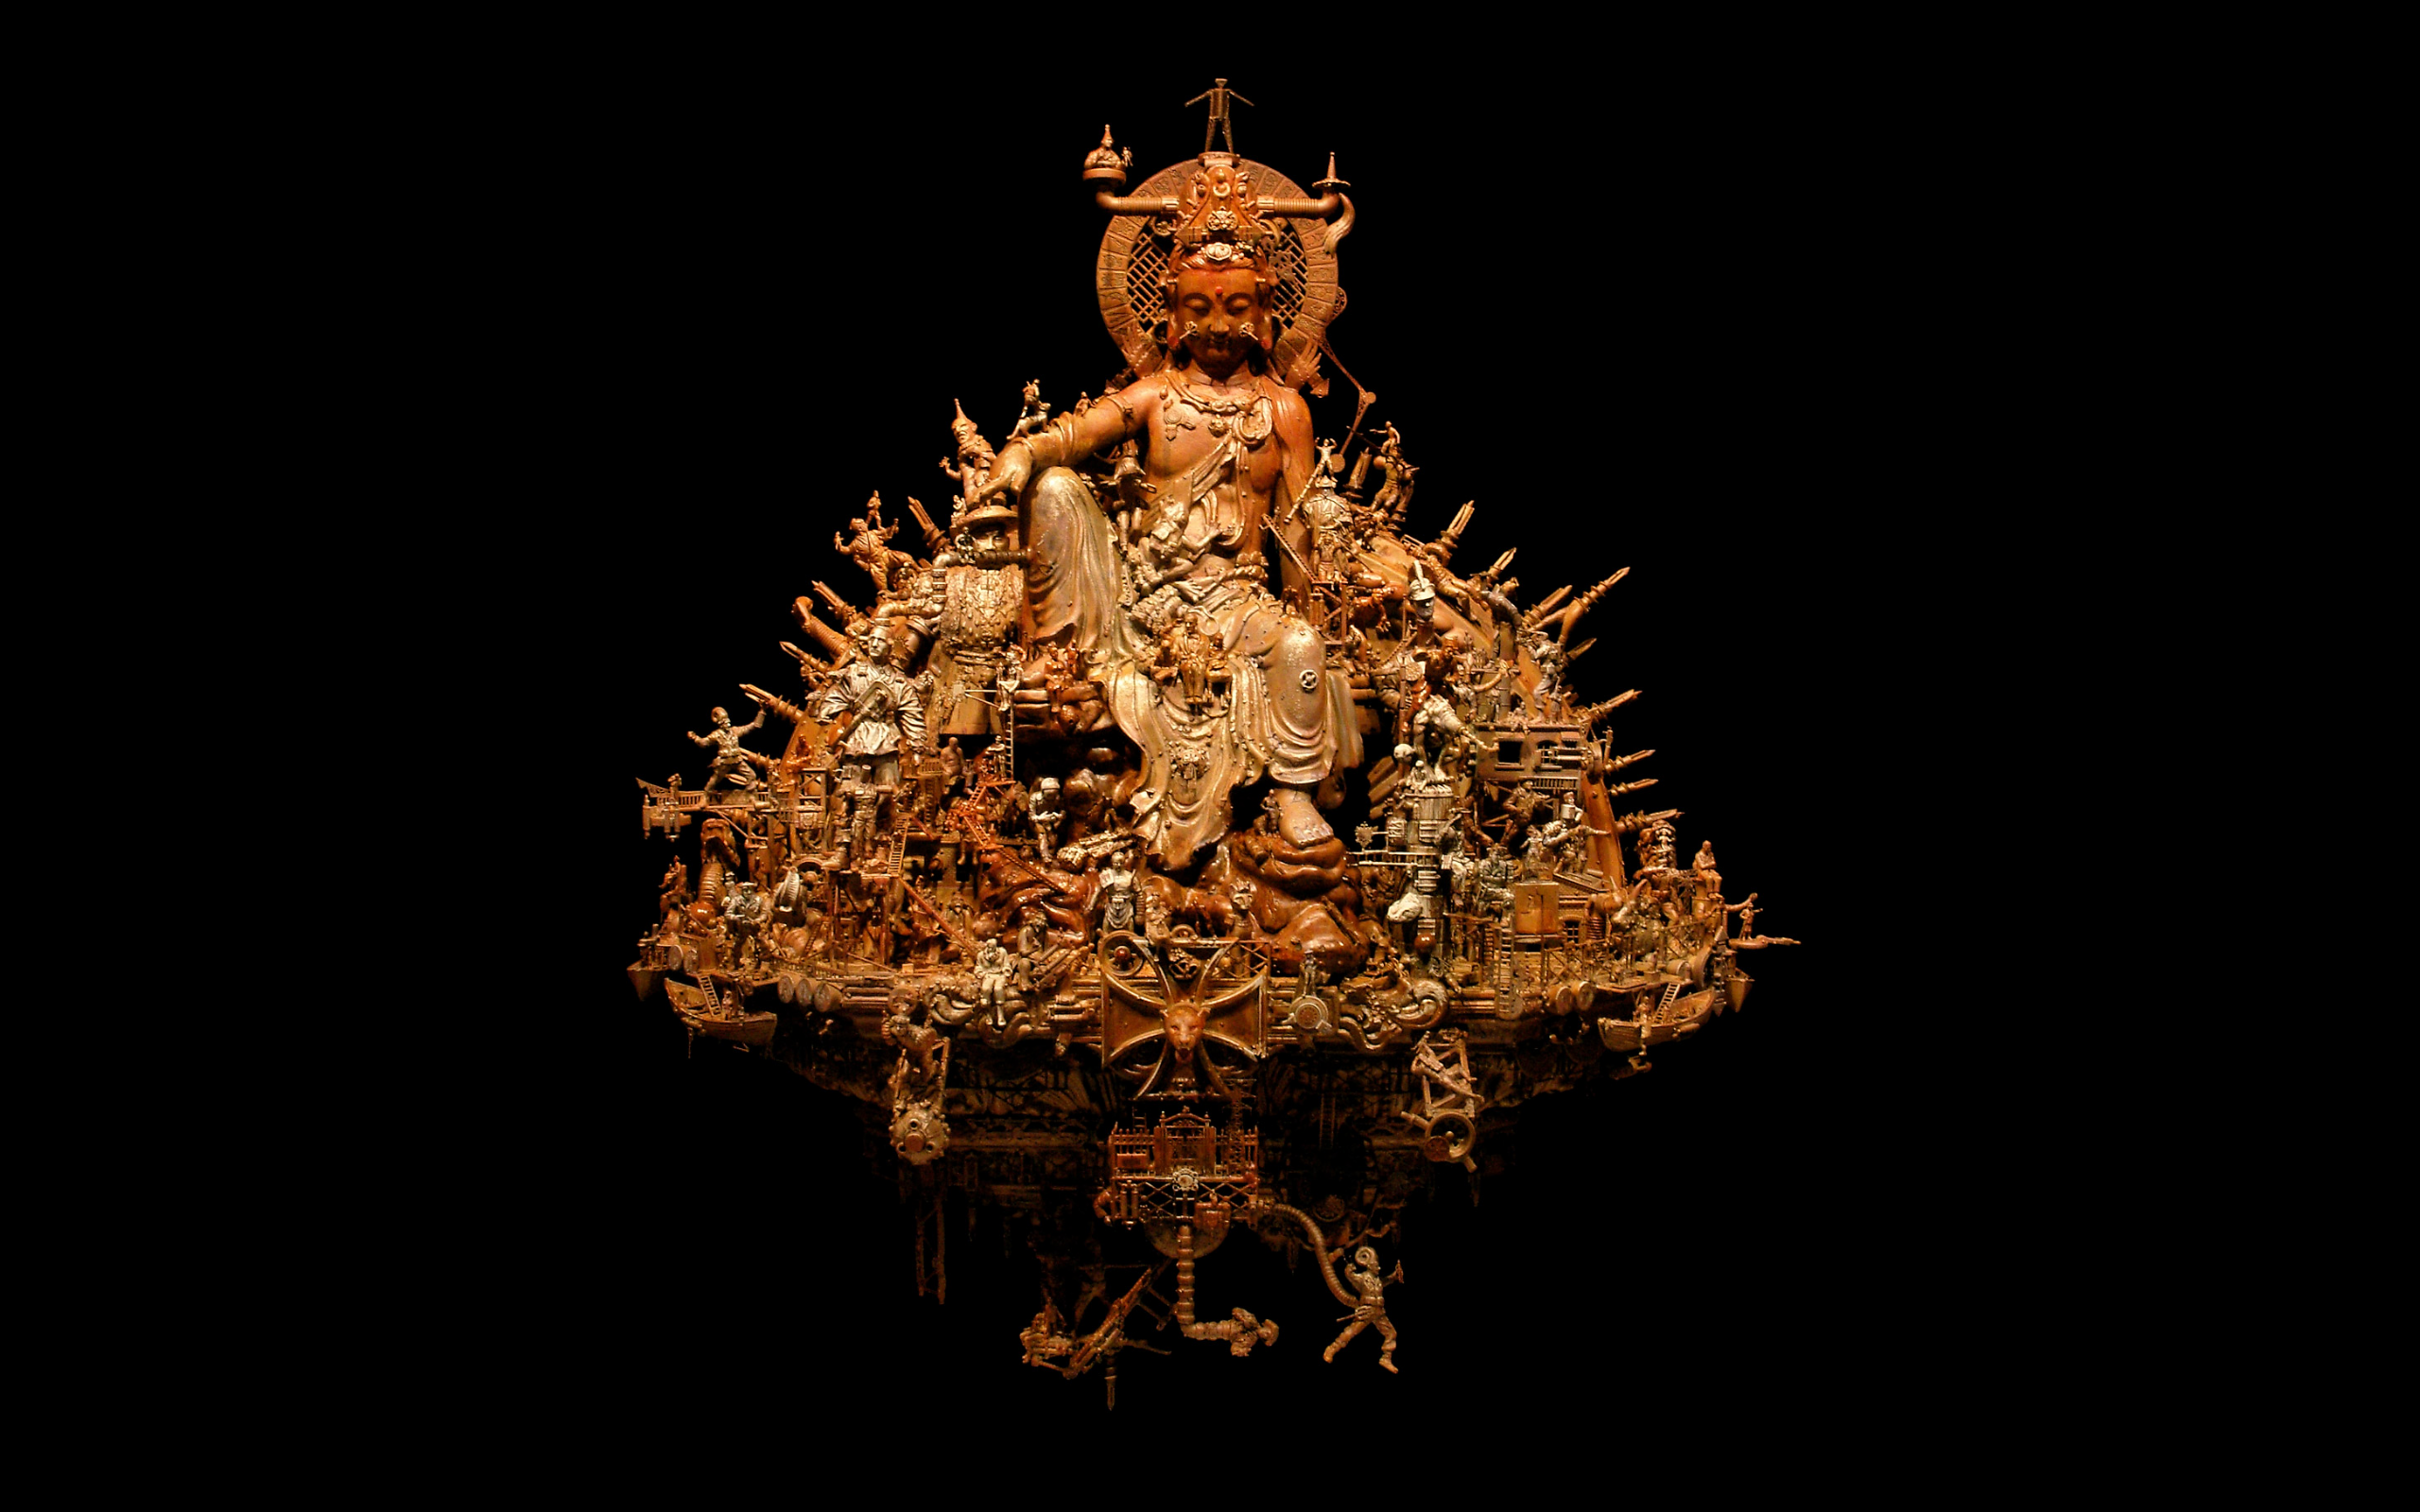 скульптуры, Будда, Крис Кукси - обои на рабочий стол